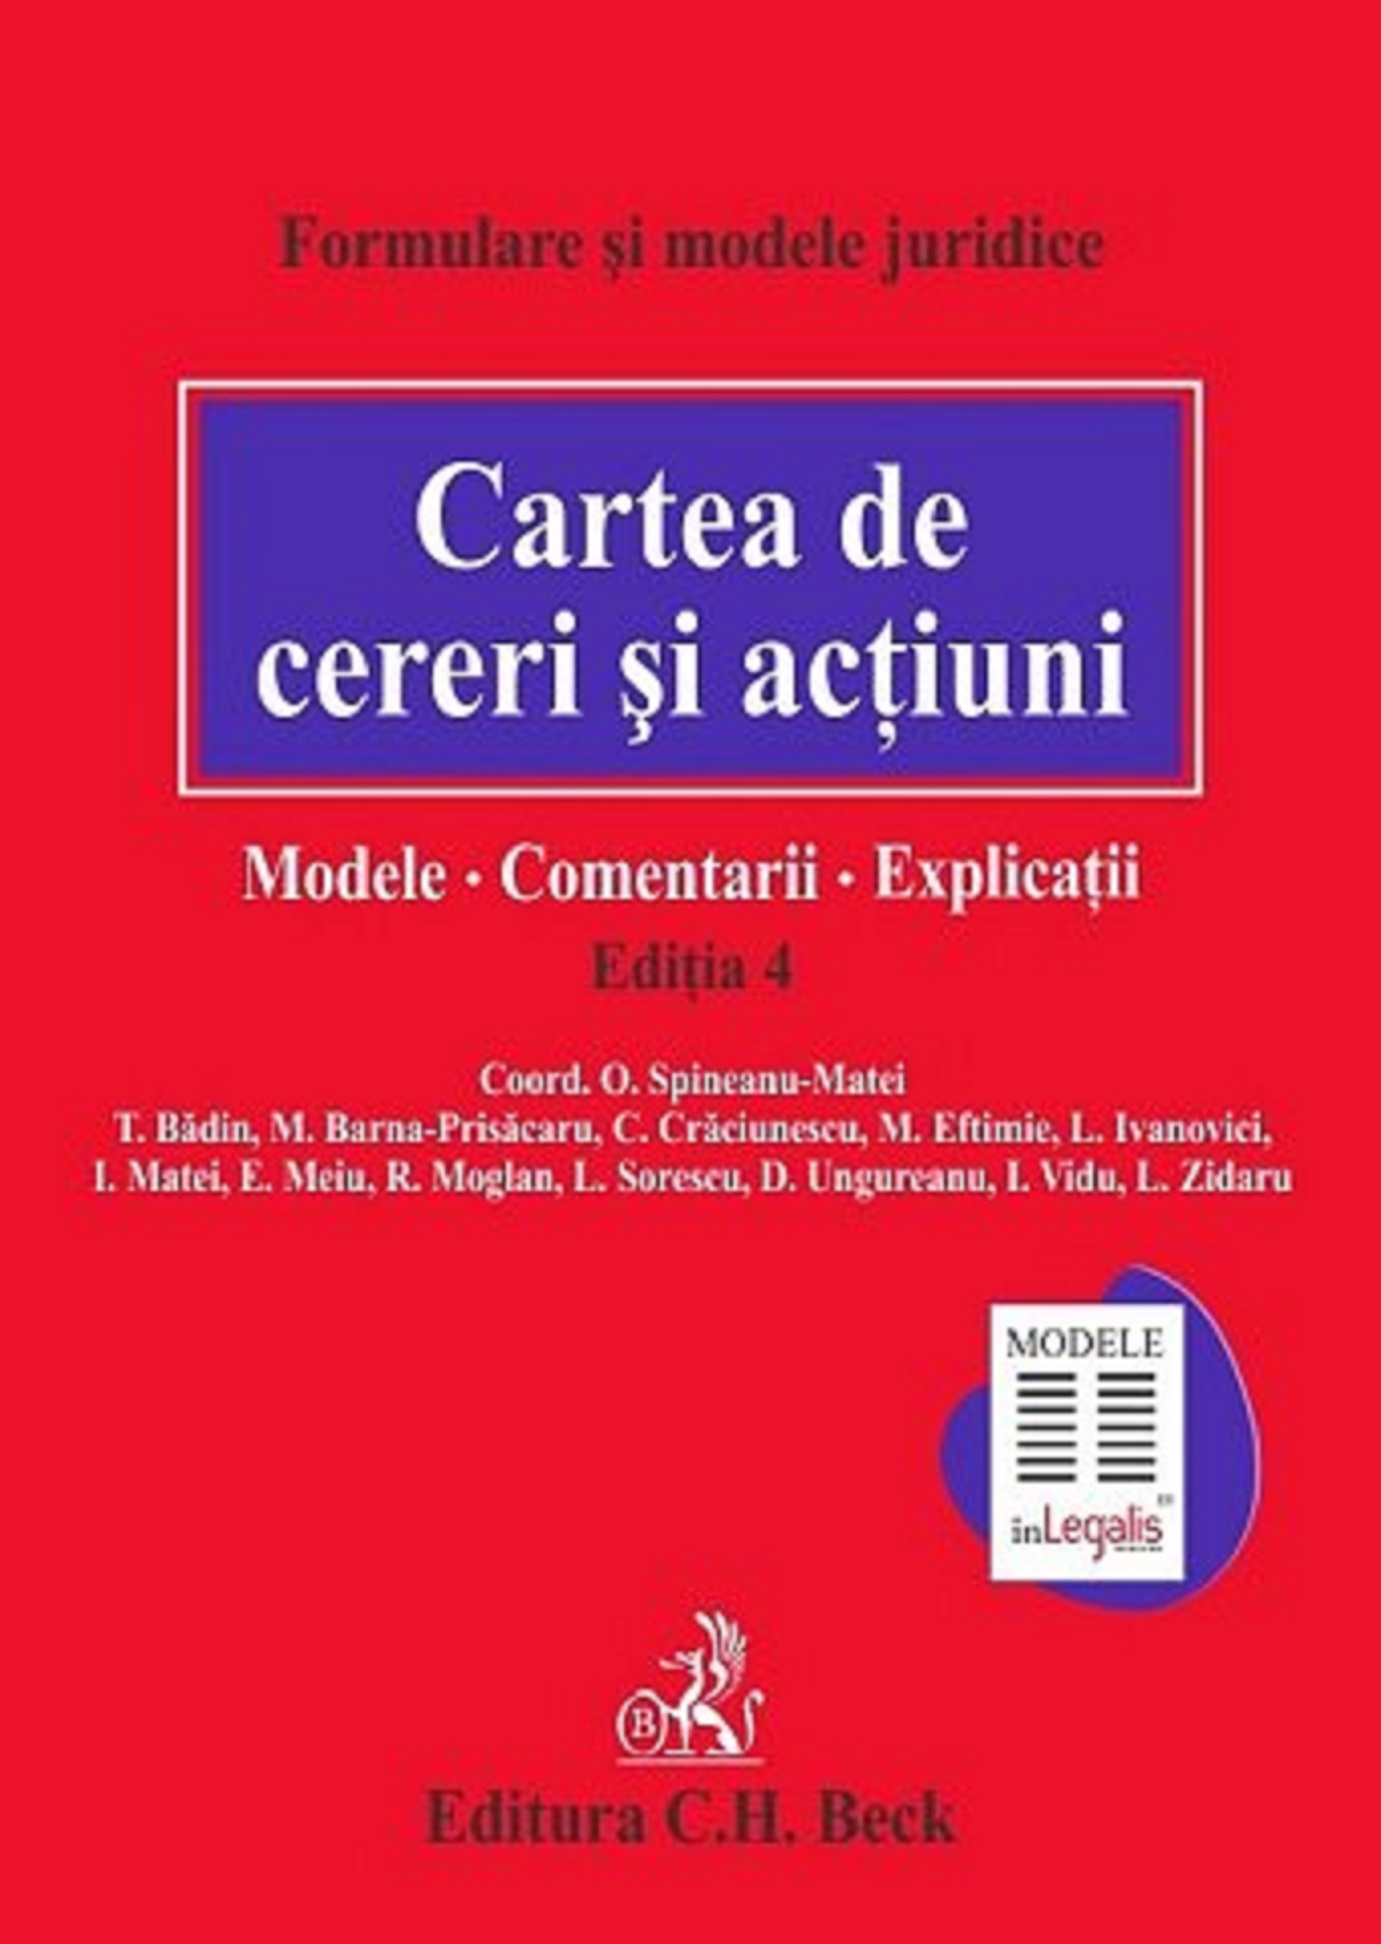 Cartea de cereri si actiuni. Modele | T. Badin, M. Barna-Prisacaru, M. Eftimie C.H. Beck Carte